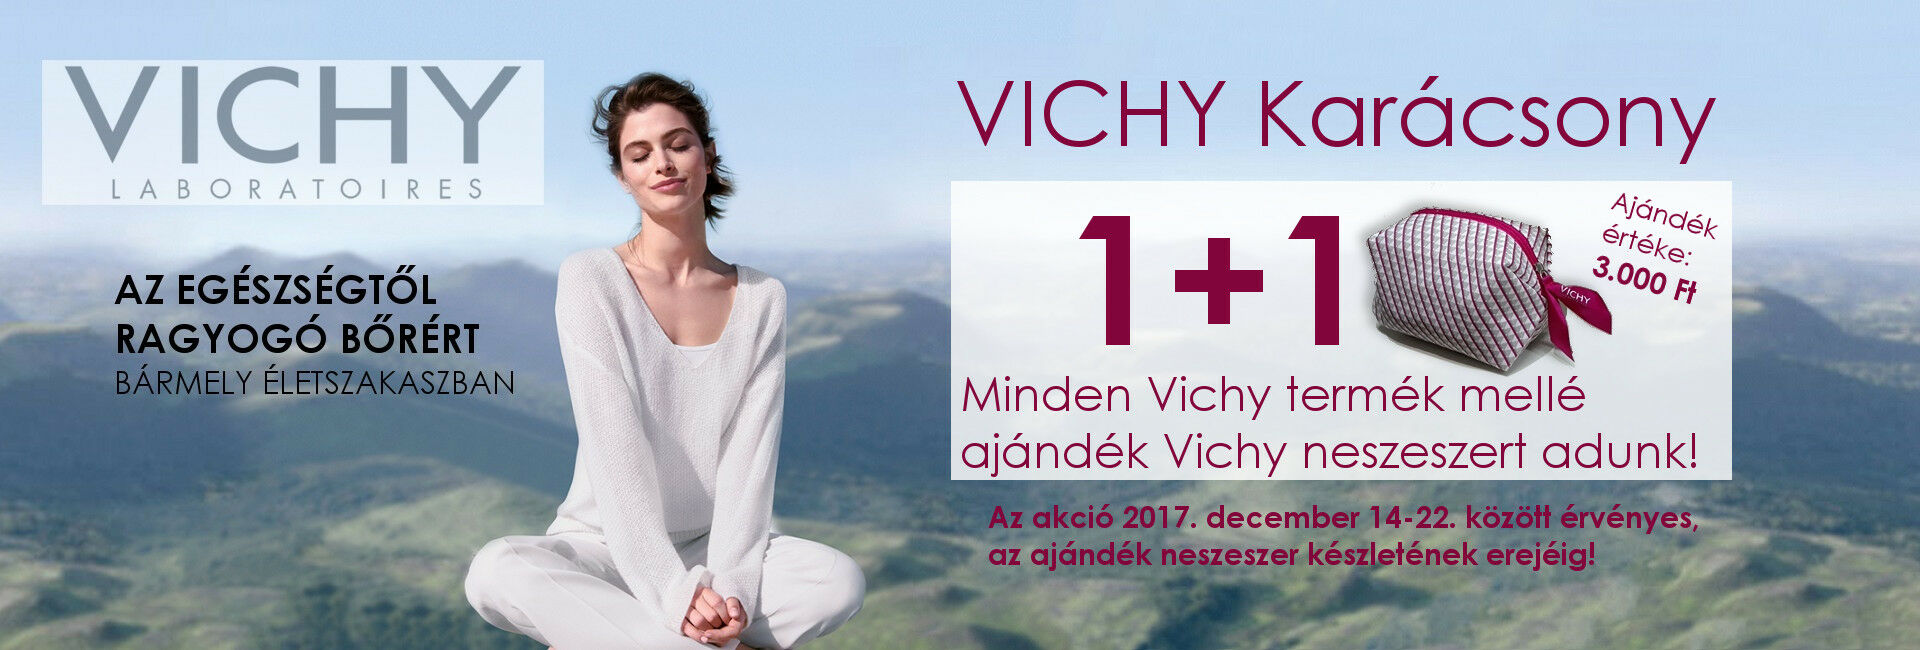 2017. december 14-22. között minden Vichy termék mellé ajándékba adunk 1db exkluzív Vichy nesszeszert 3.000 Ft értékben!